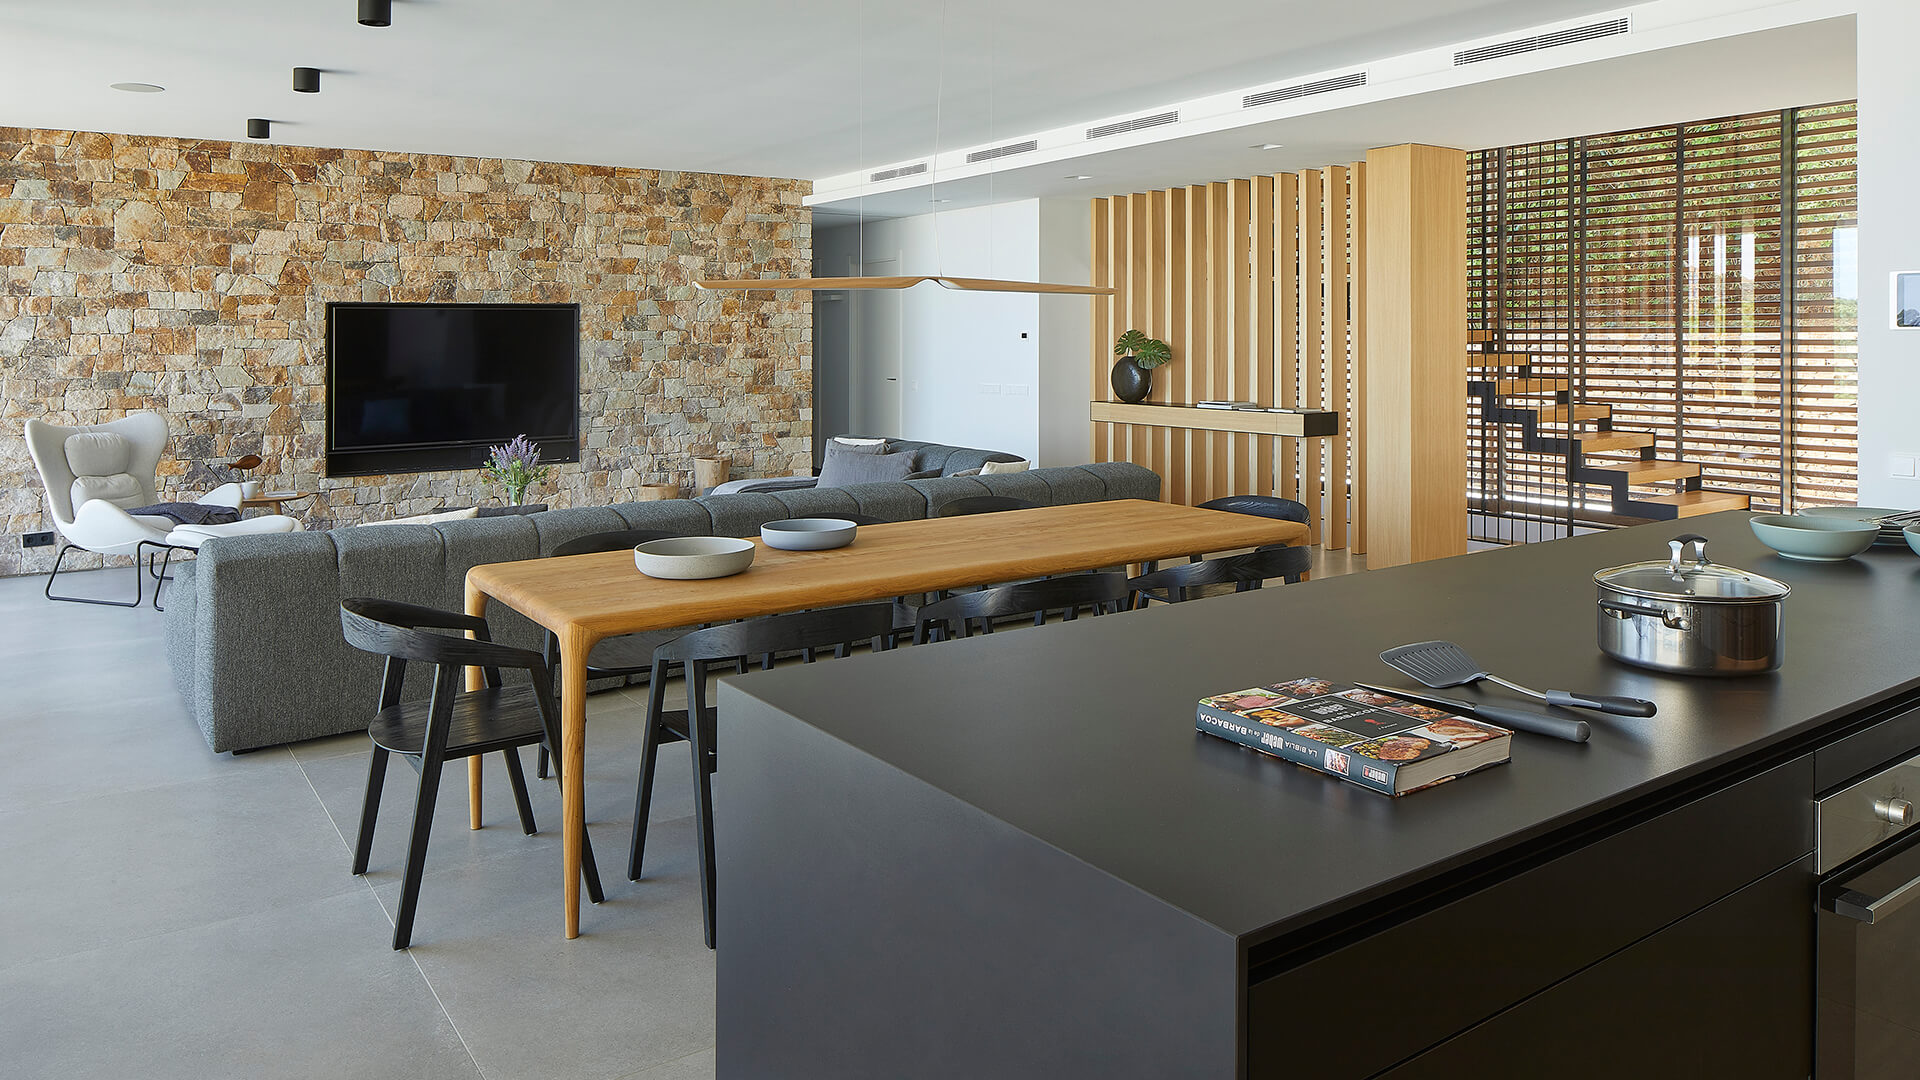 Cozinha Santos de madeira carvalho aberta para a sala de estar com sala de jantar